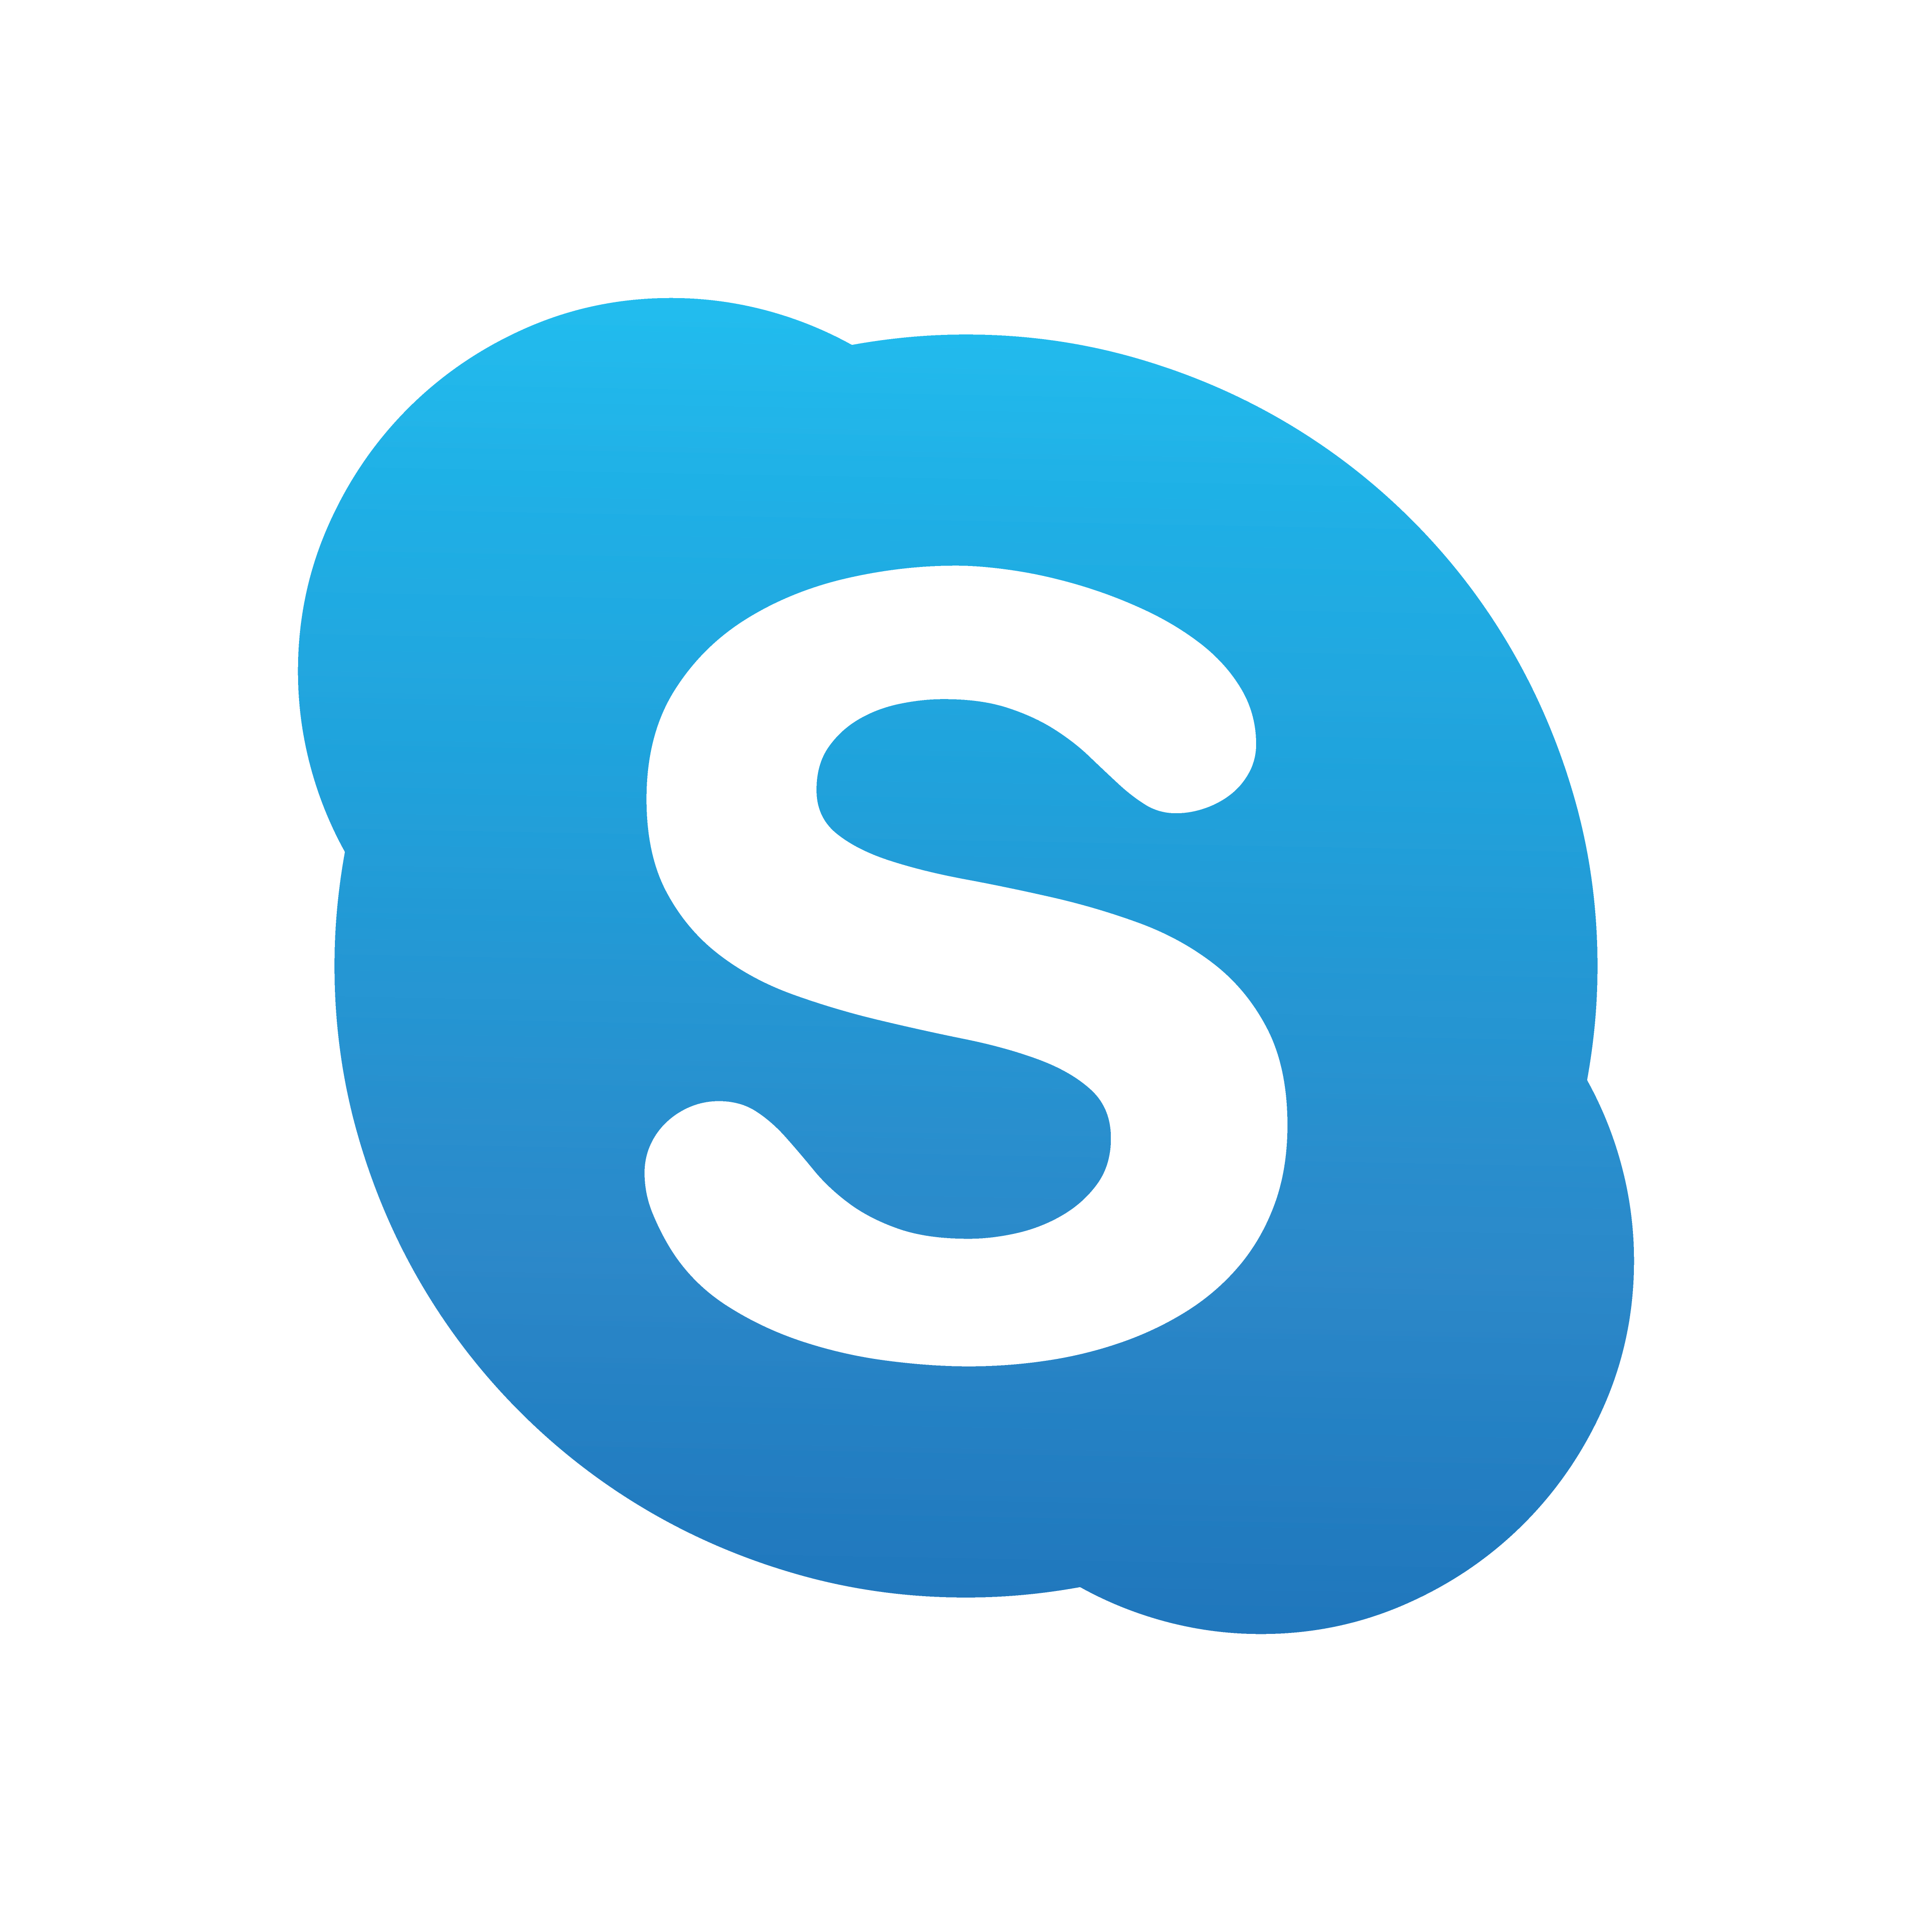 skype logo 0 - Skype Logo